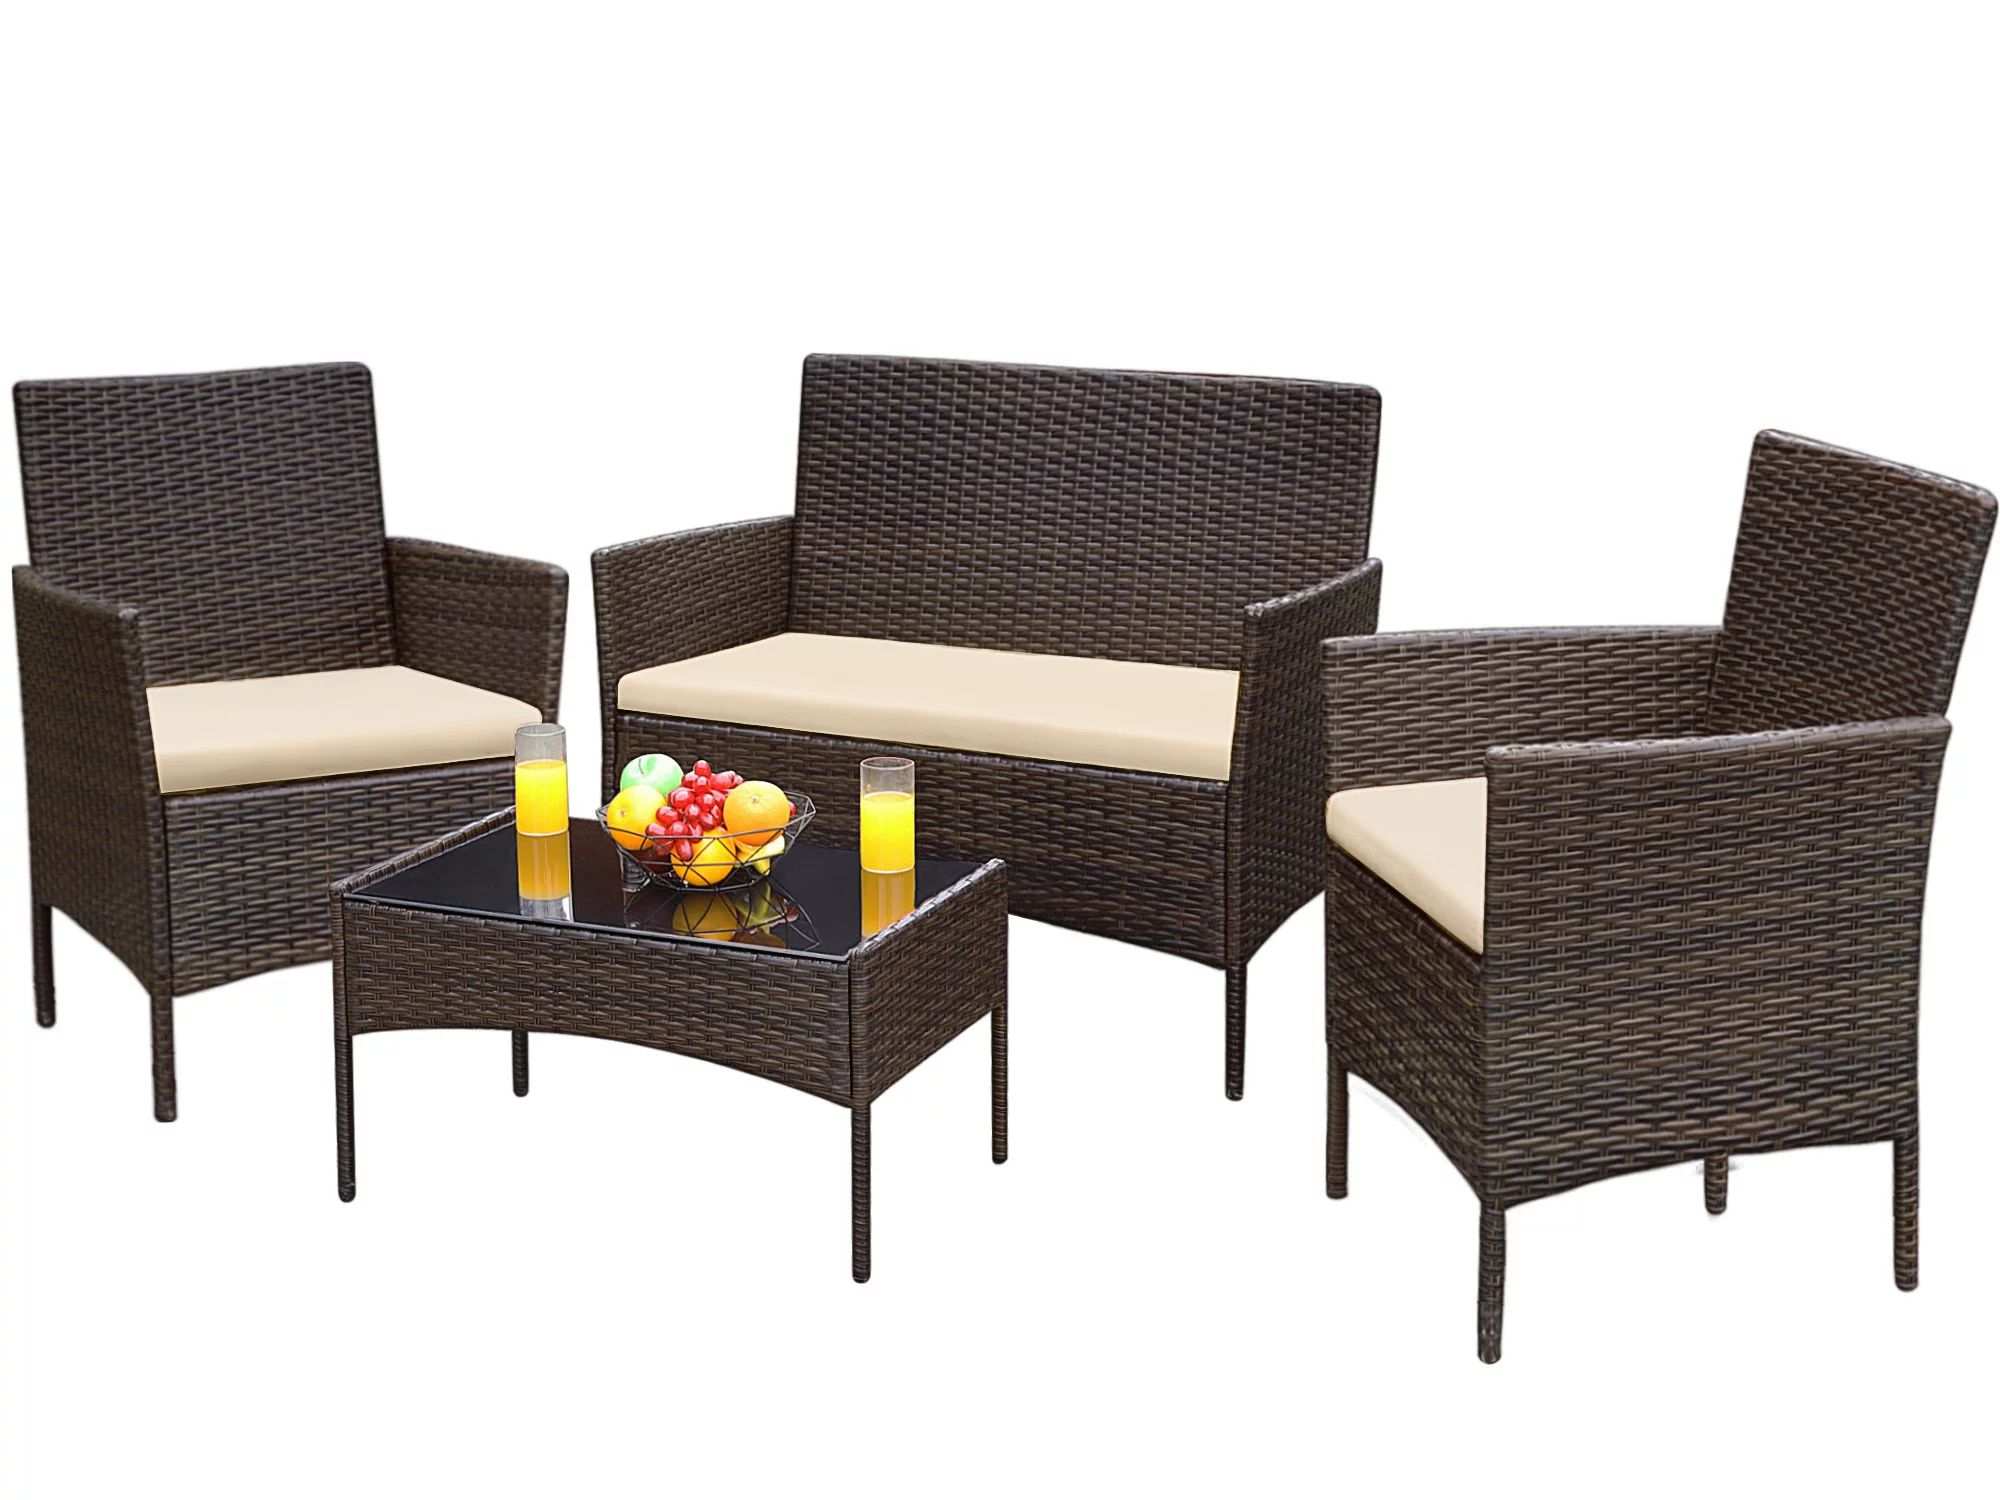 Devoko 4 Pieces Outdoor Patio Conversation Set PE Rattan Wicker Furniture Set, Brown/Beige | Walmart (US)